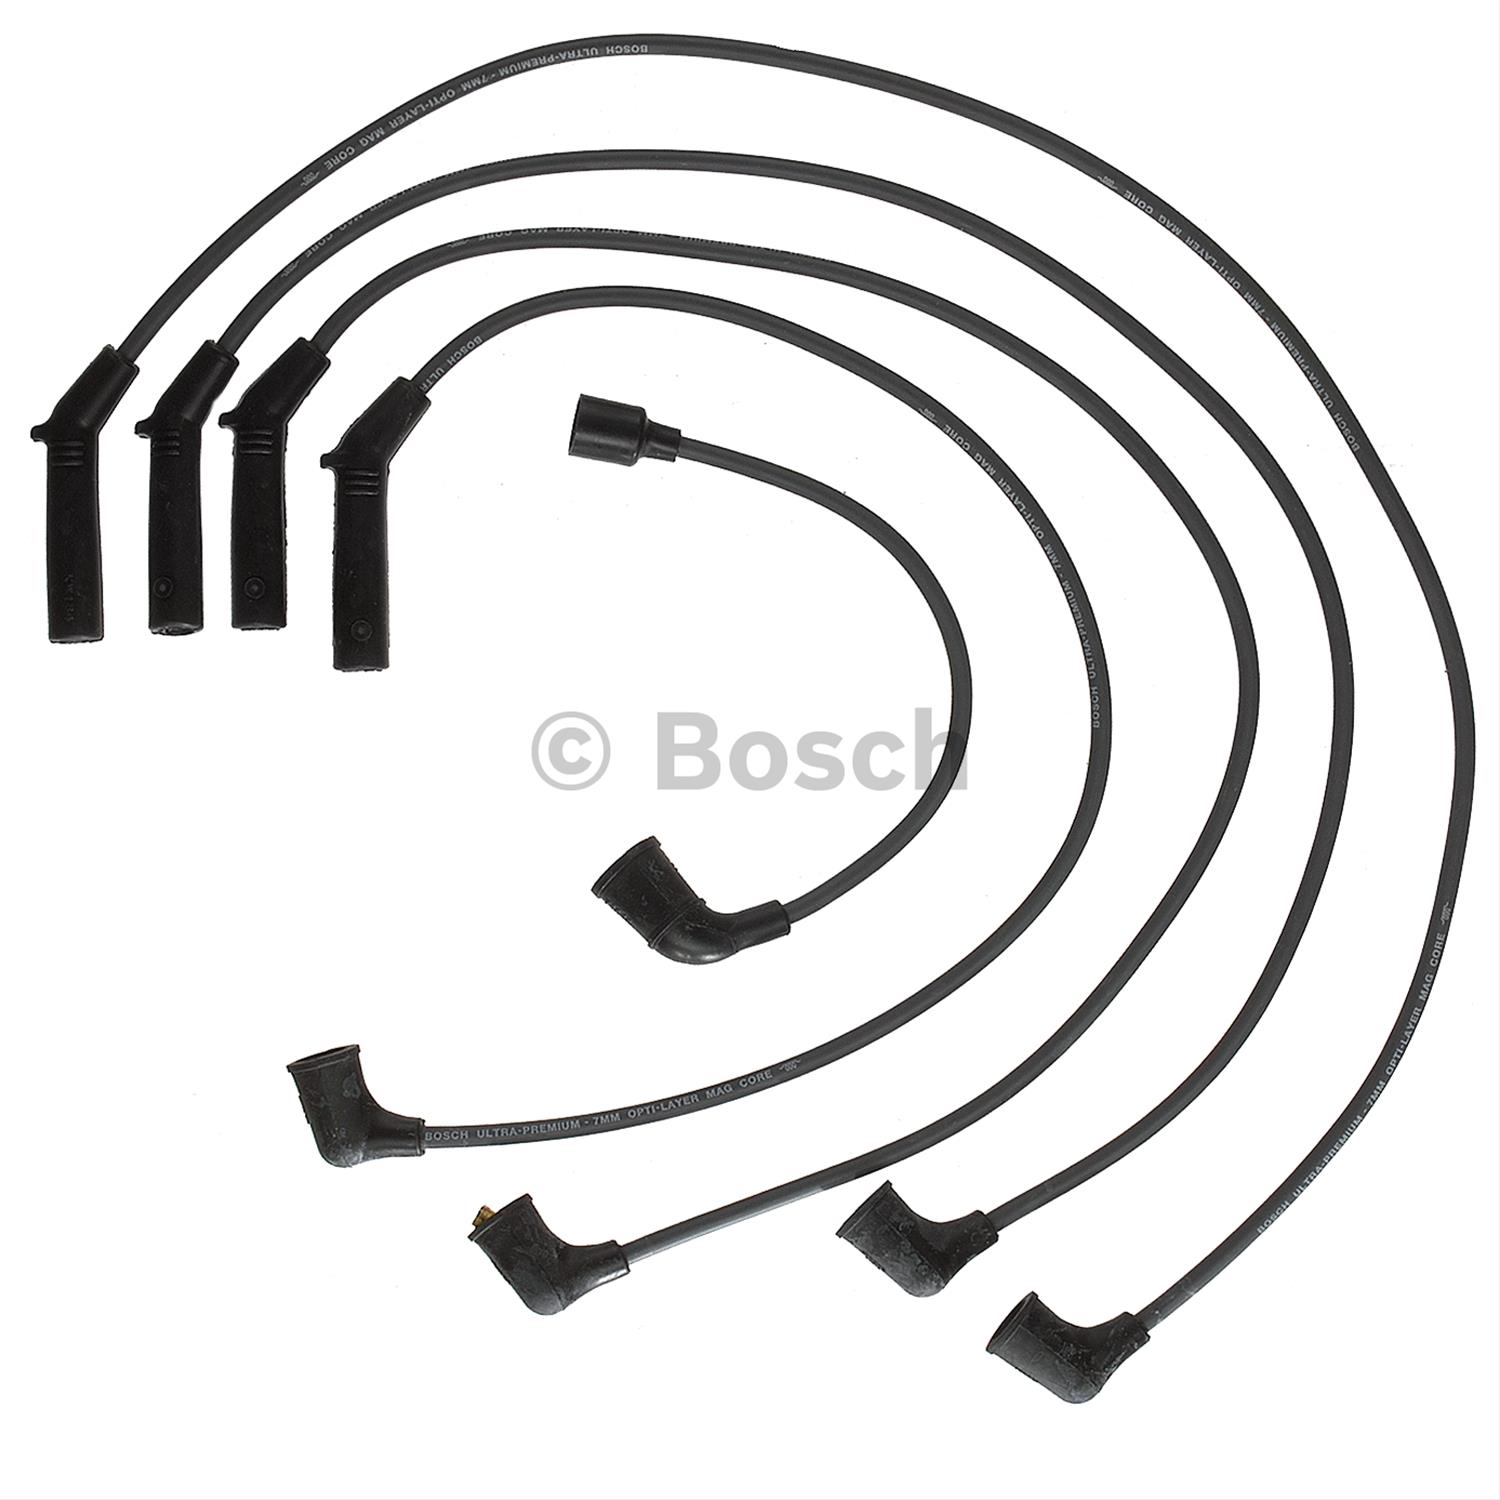 Bosch 09207 Premium Spark Plug Wire Set 